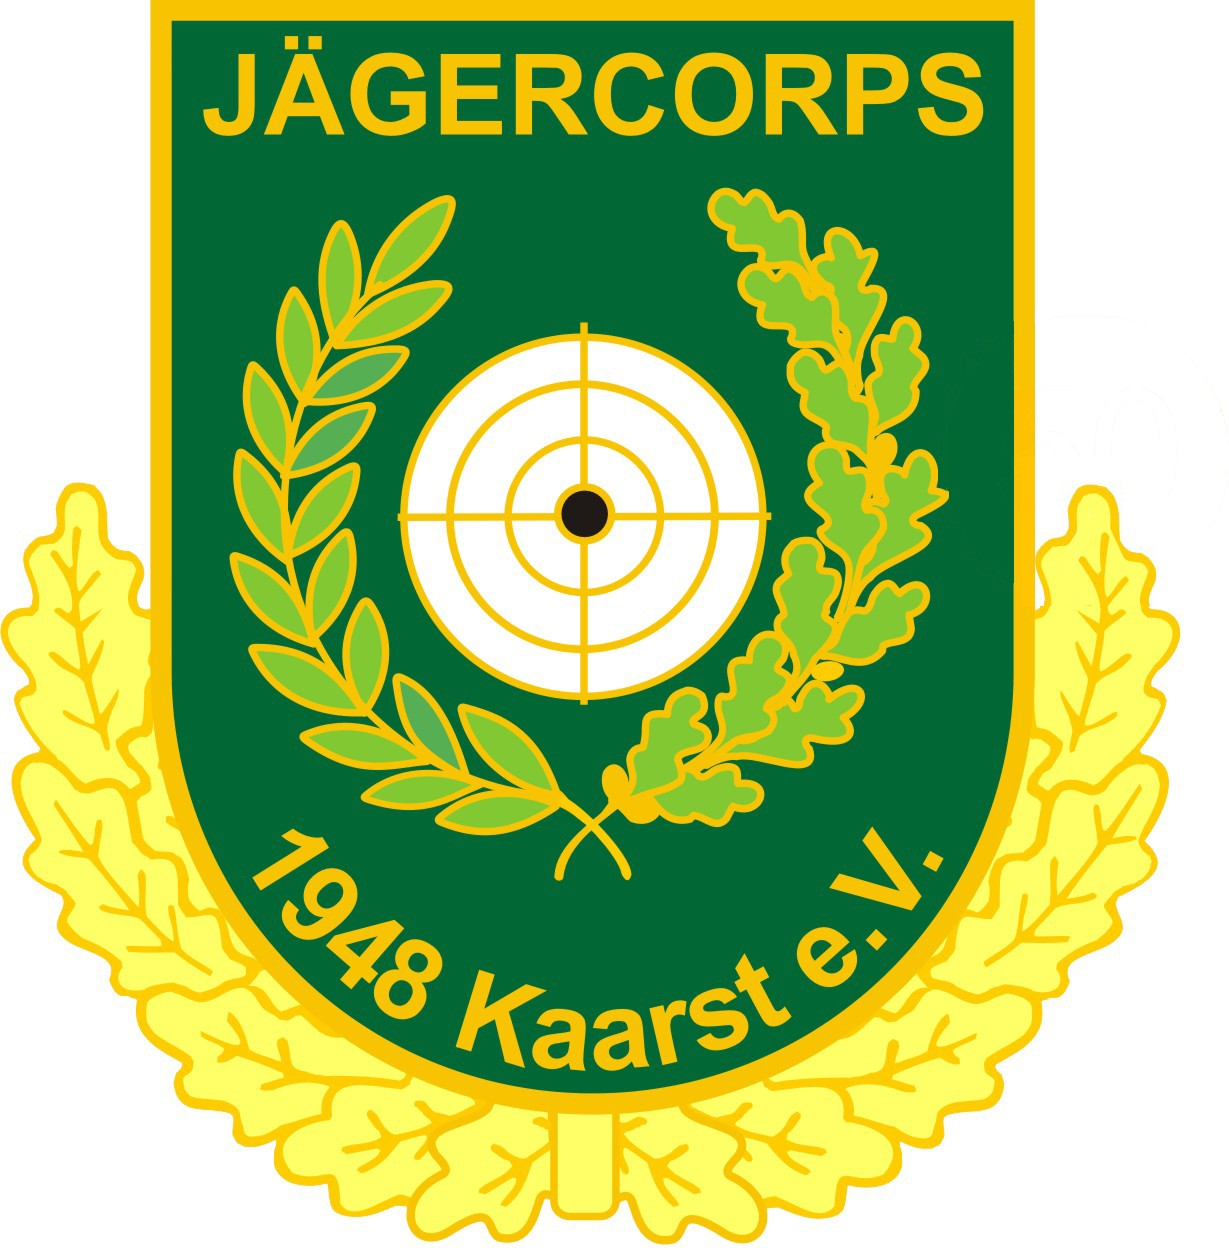 (c) Jägercorps-kaarst.de